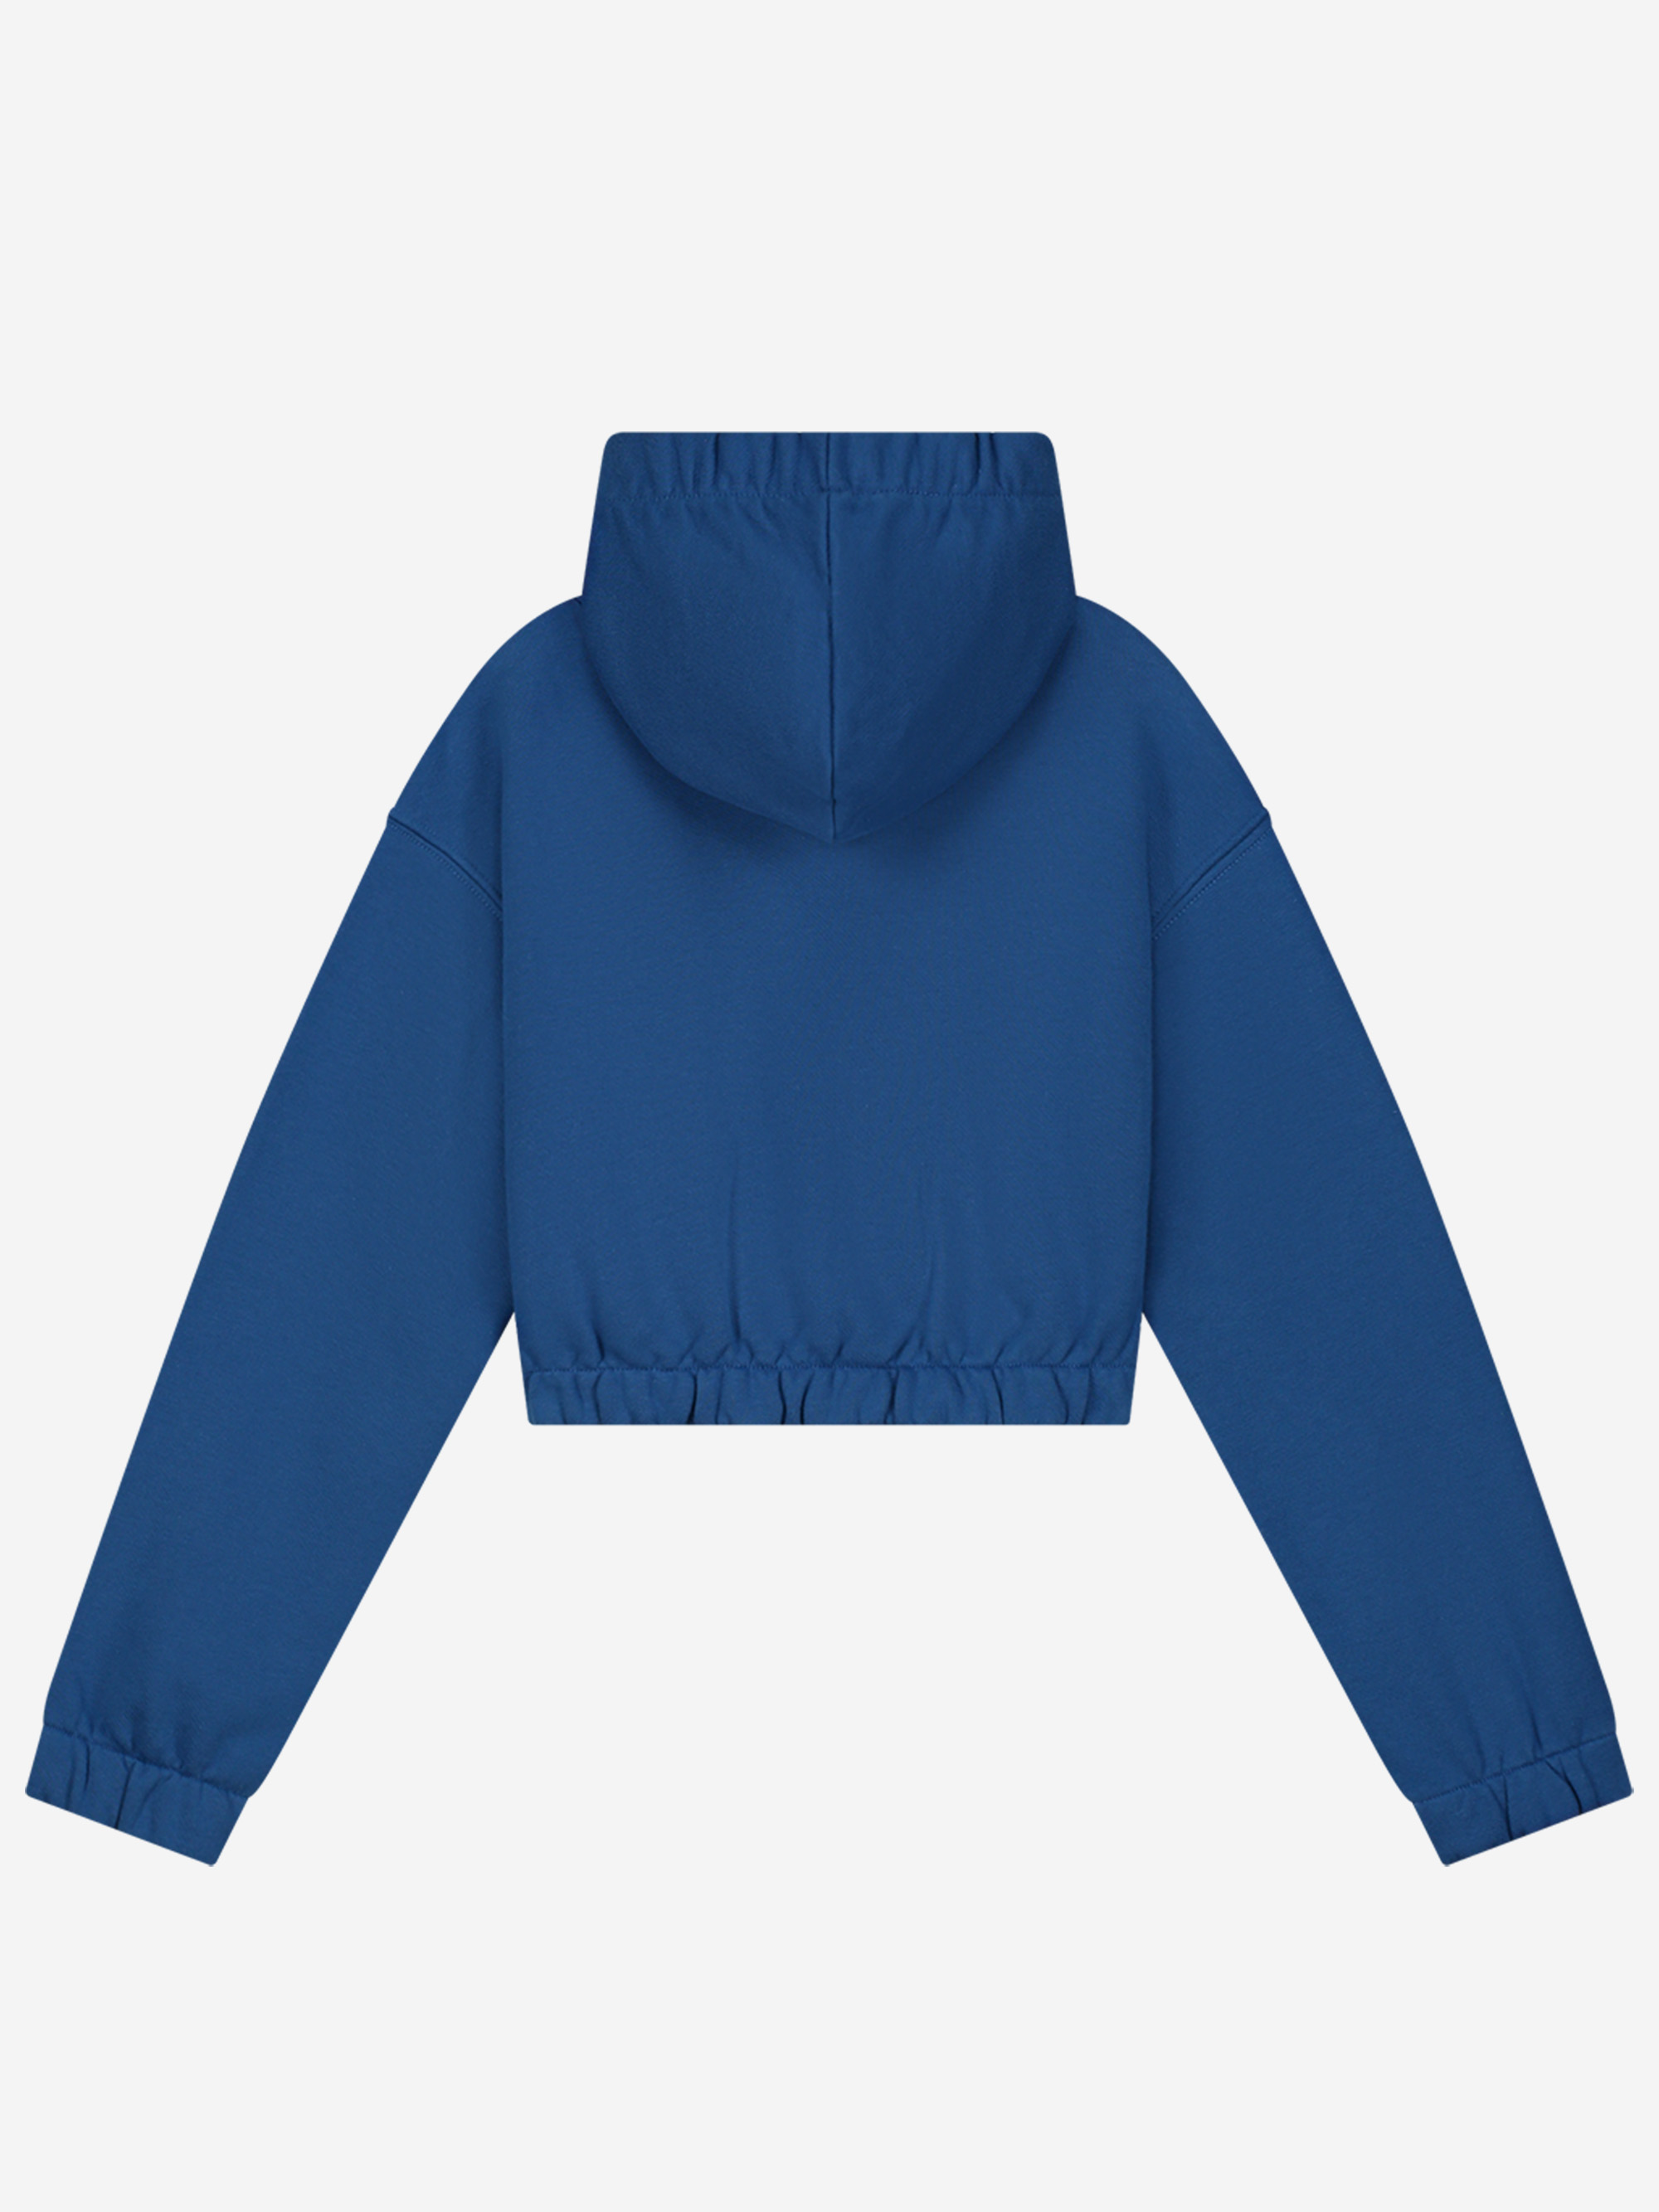 Cropped hoodie